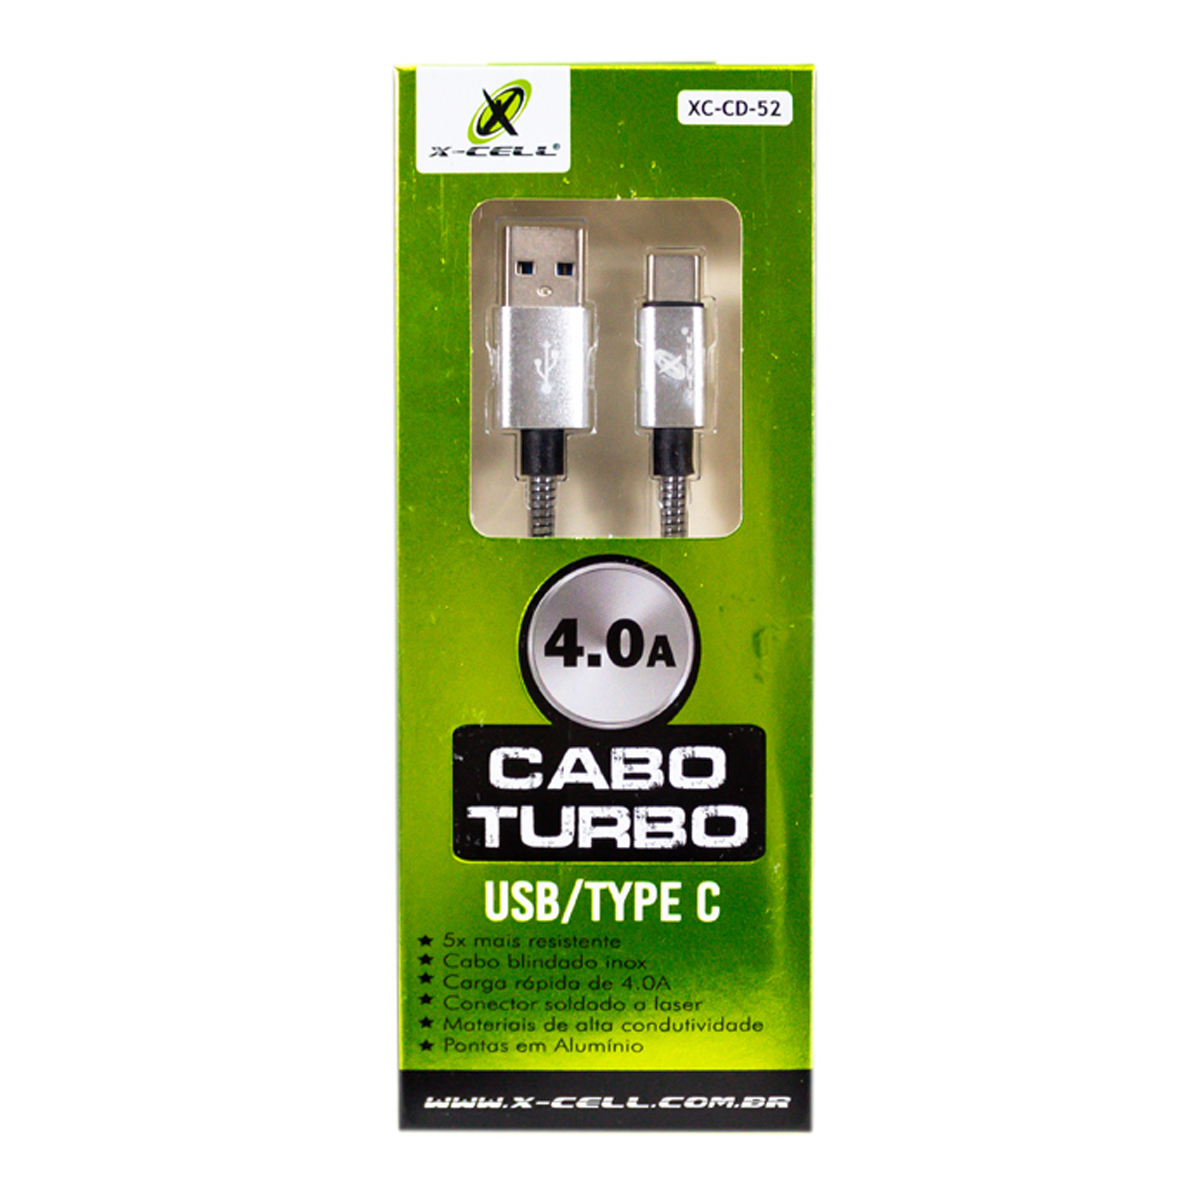 7898615158284 - CABO DE DADOS USB TYPE C XCCD52